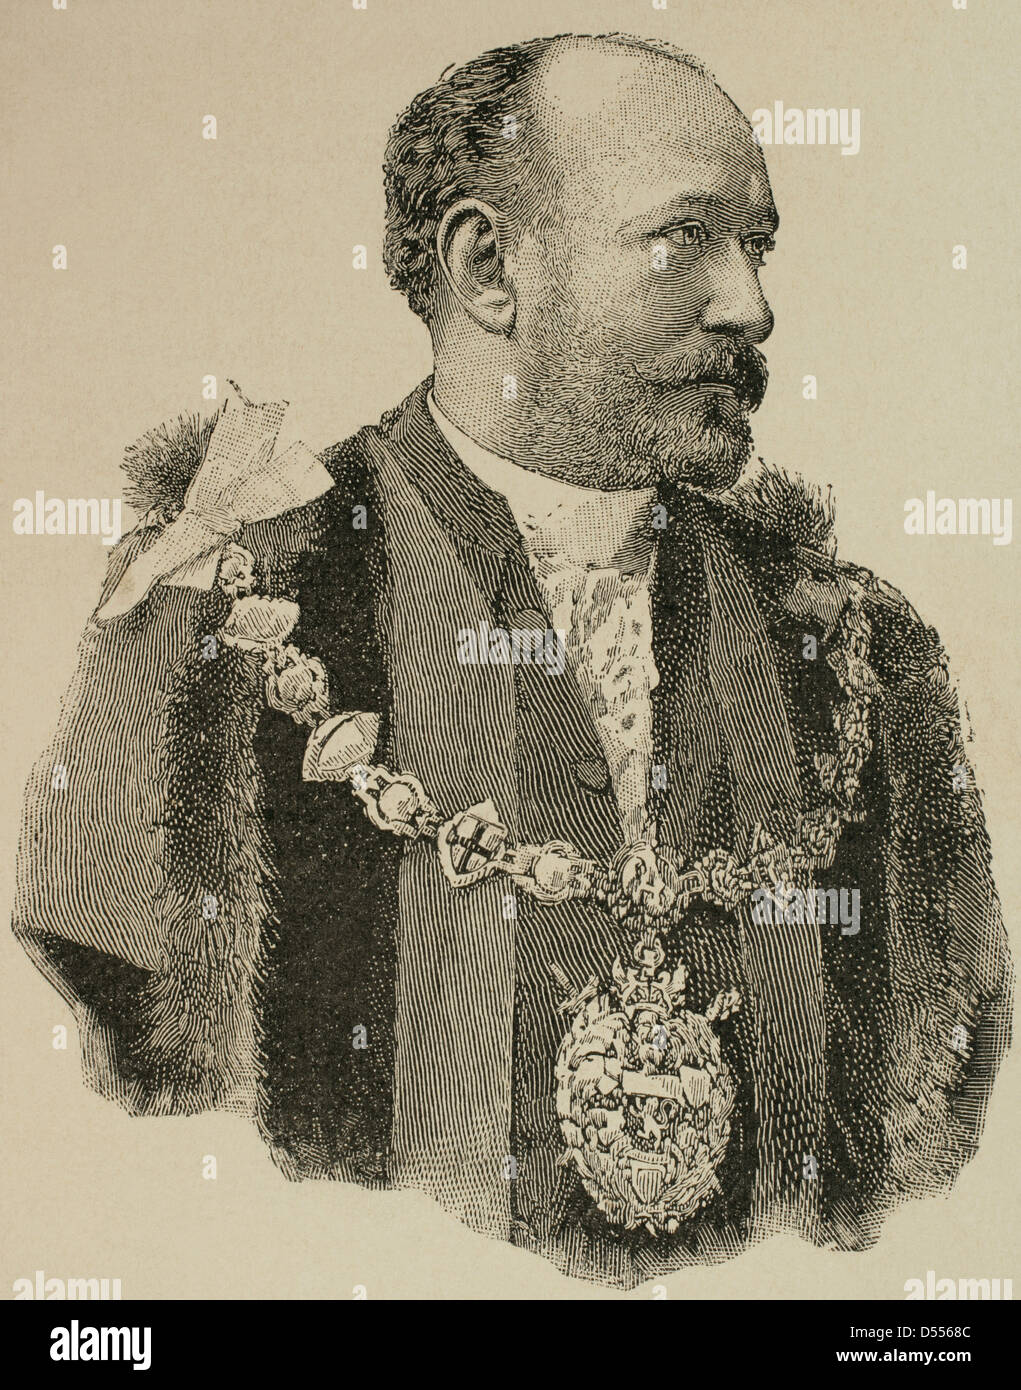 Augustus Harris (1852-1896). El actor inglés, empresario y dramaturgo. Grabado en la ilustración artística, 1896. Foto de stock